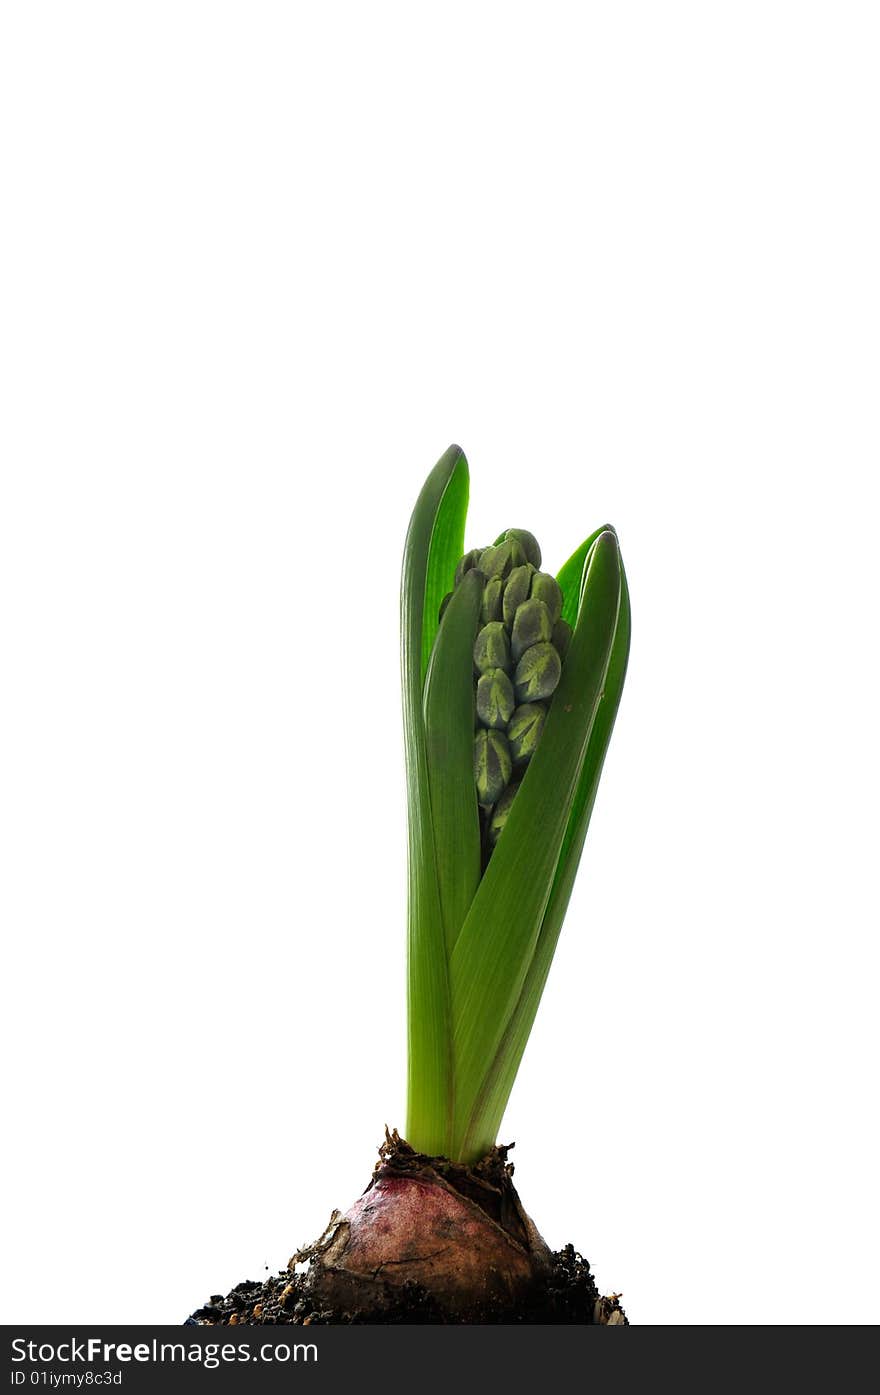 Hyacinth isolated on white - seasonal flower